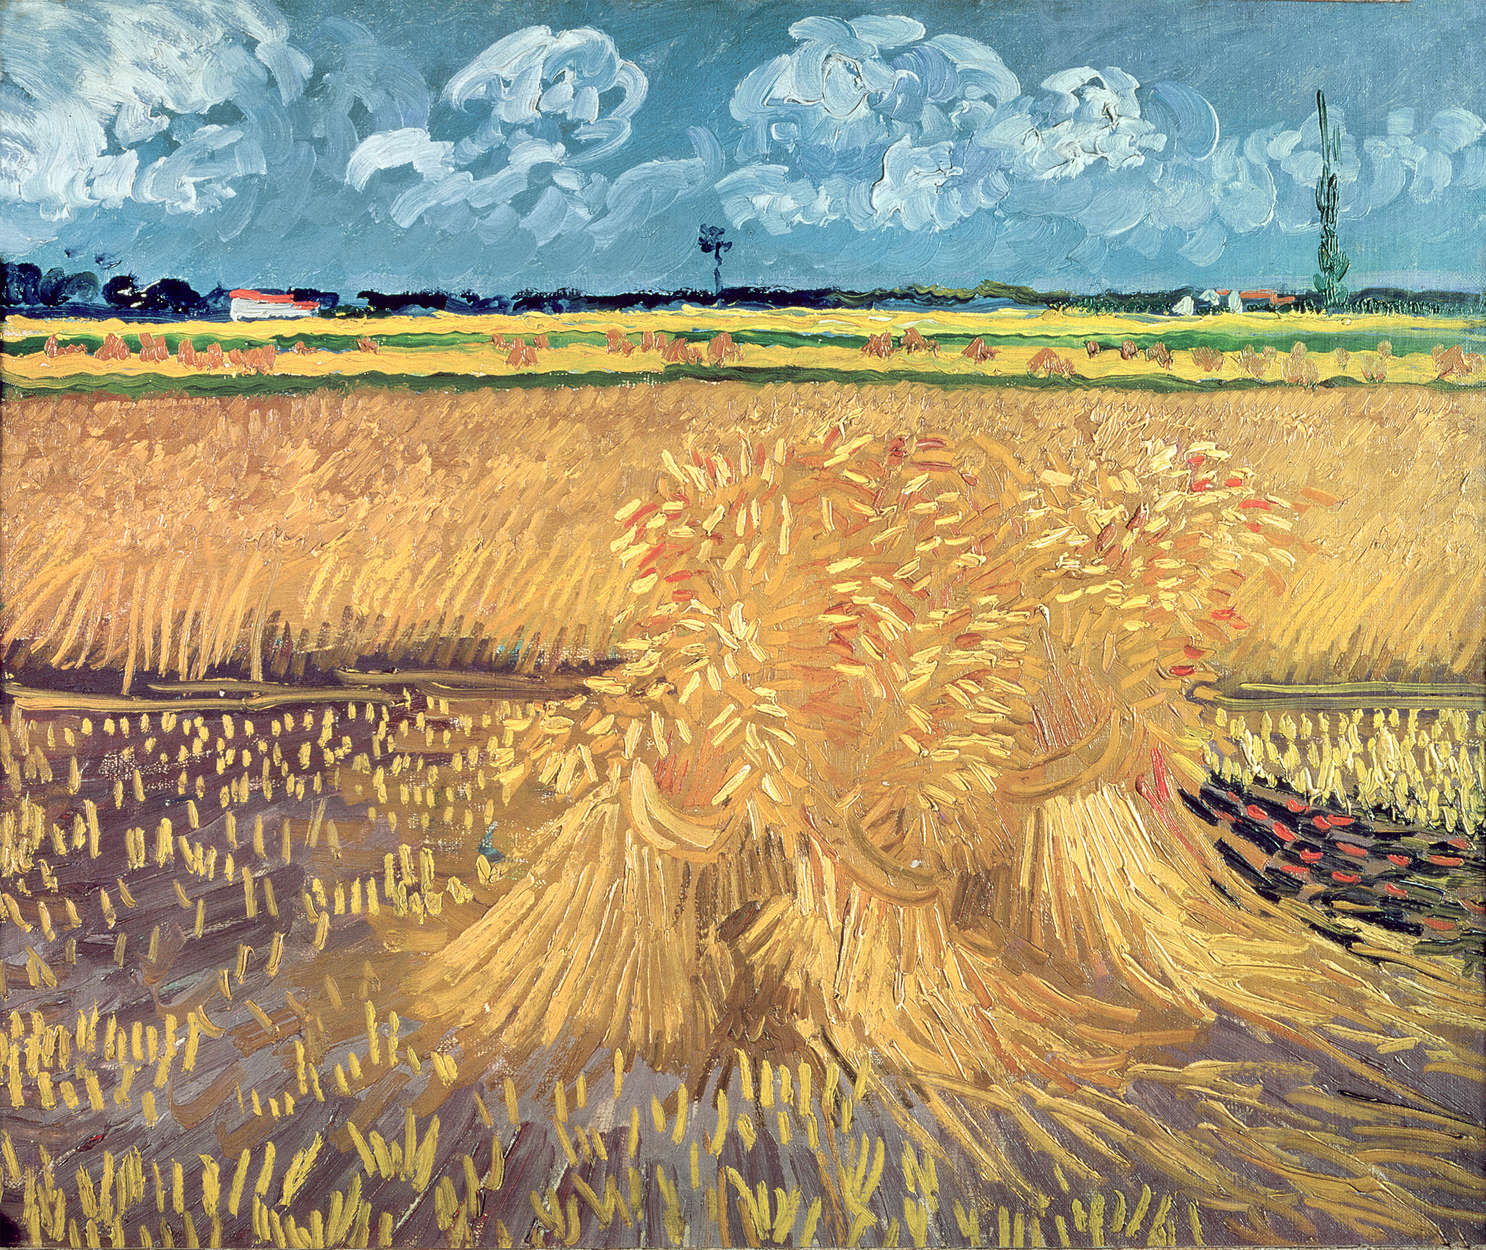             Corvi su un campo di grano", murale di Vincent van Gogh
        